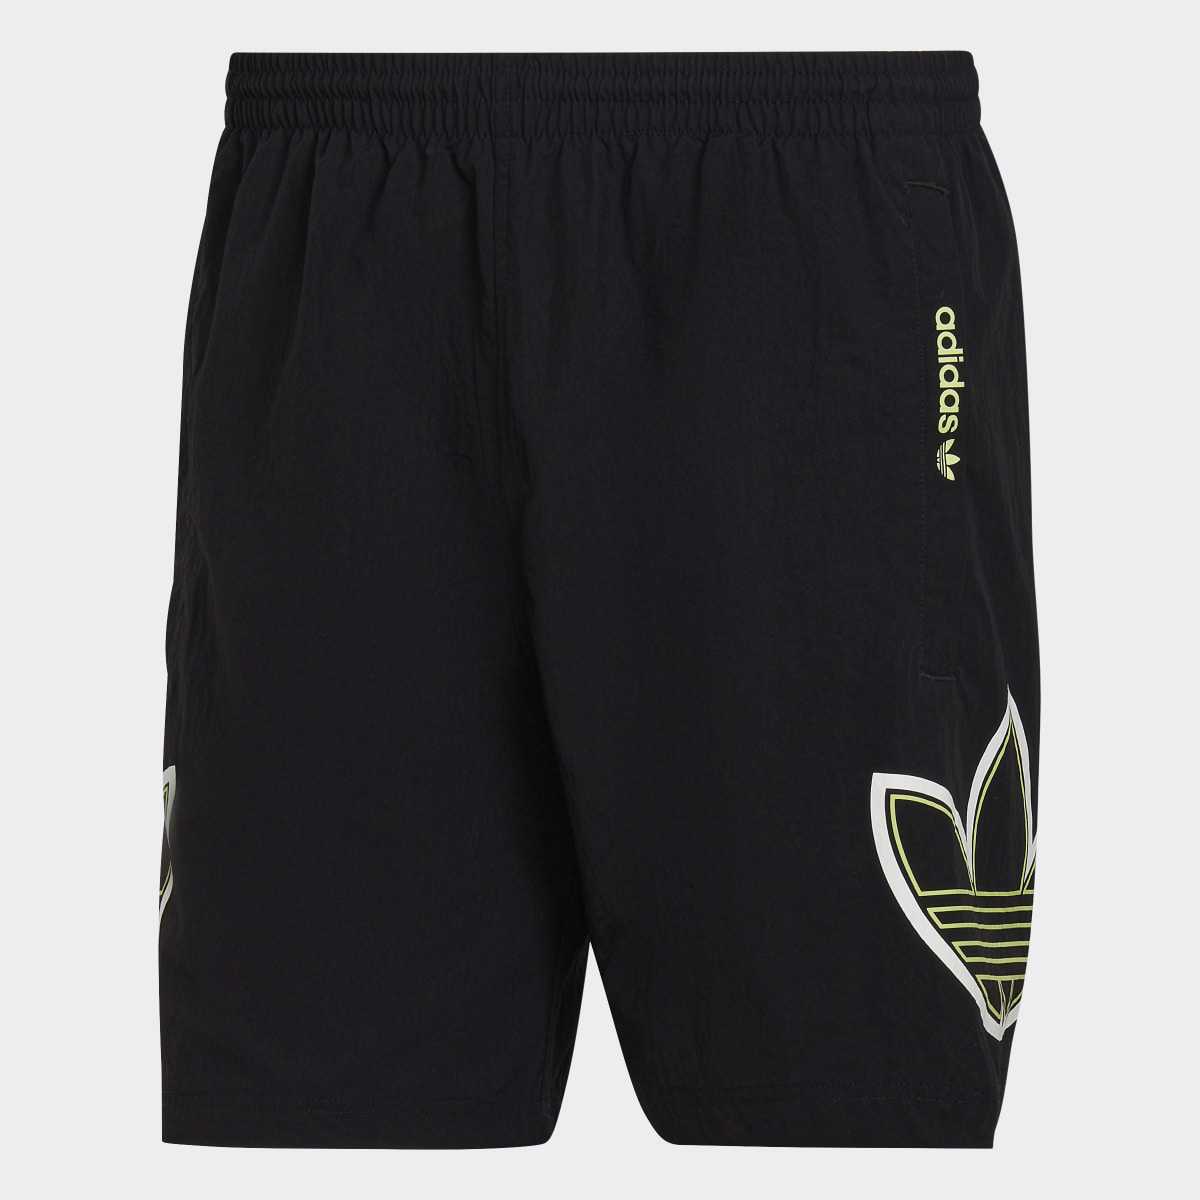 Adidas SPRT Swim Shorts. 4